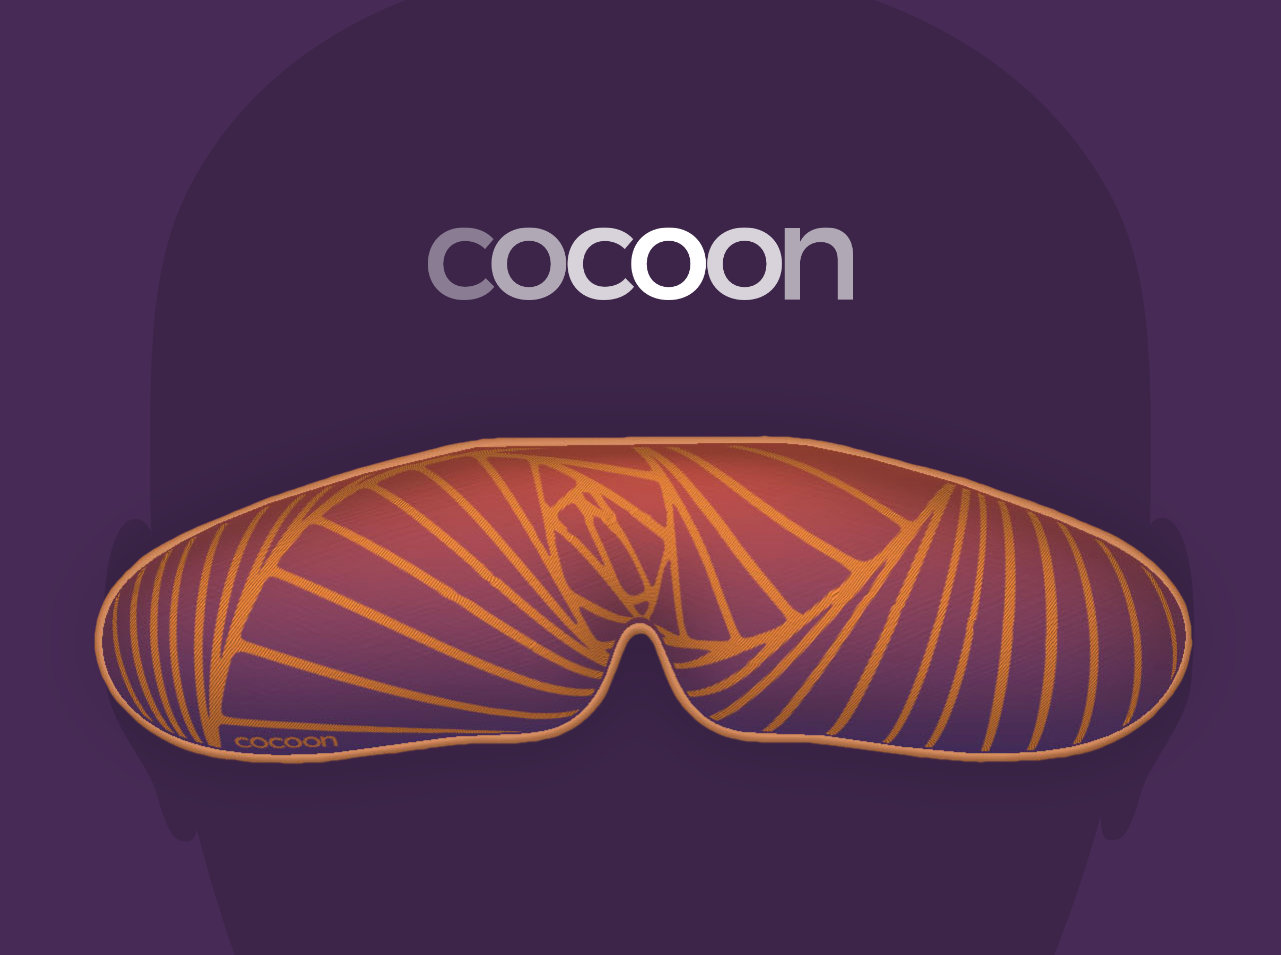 Cocoon Display